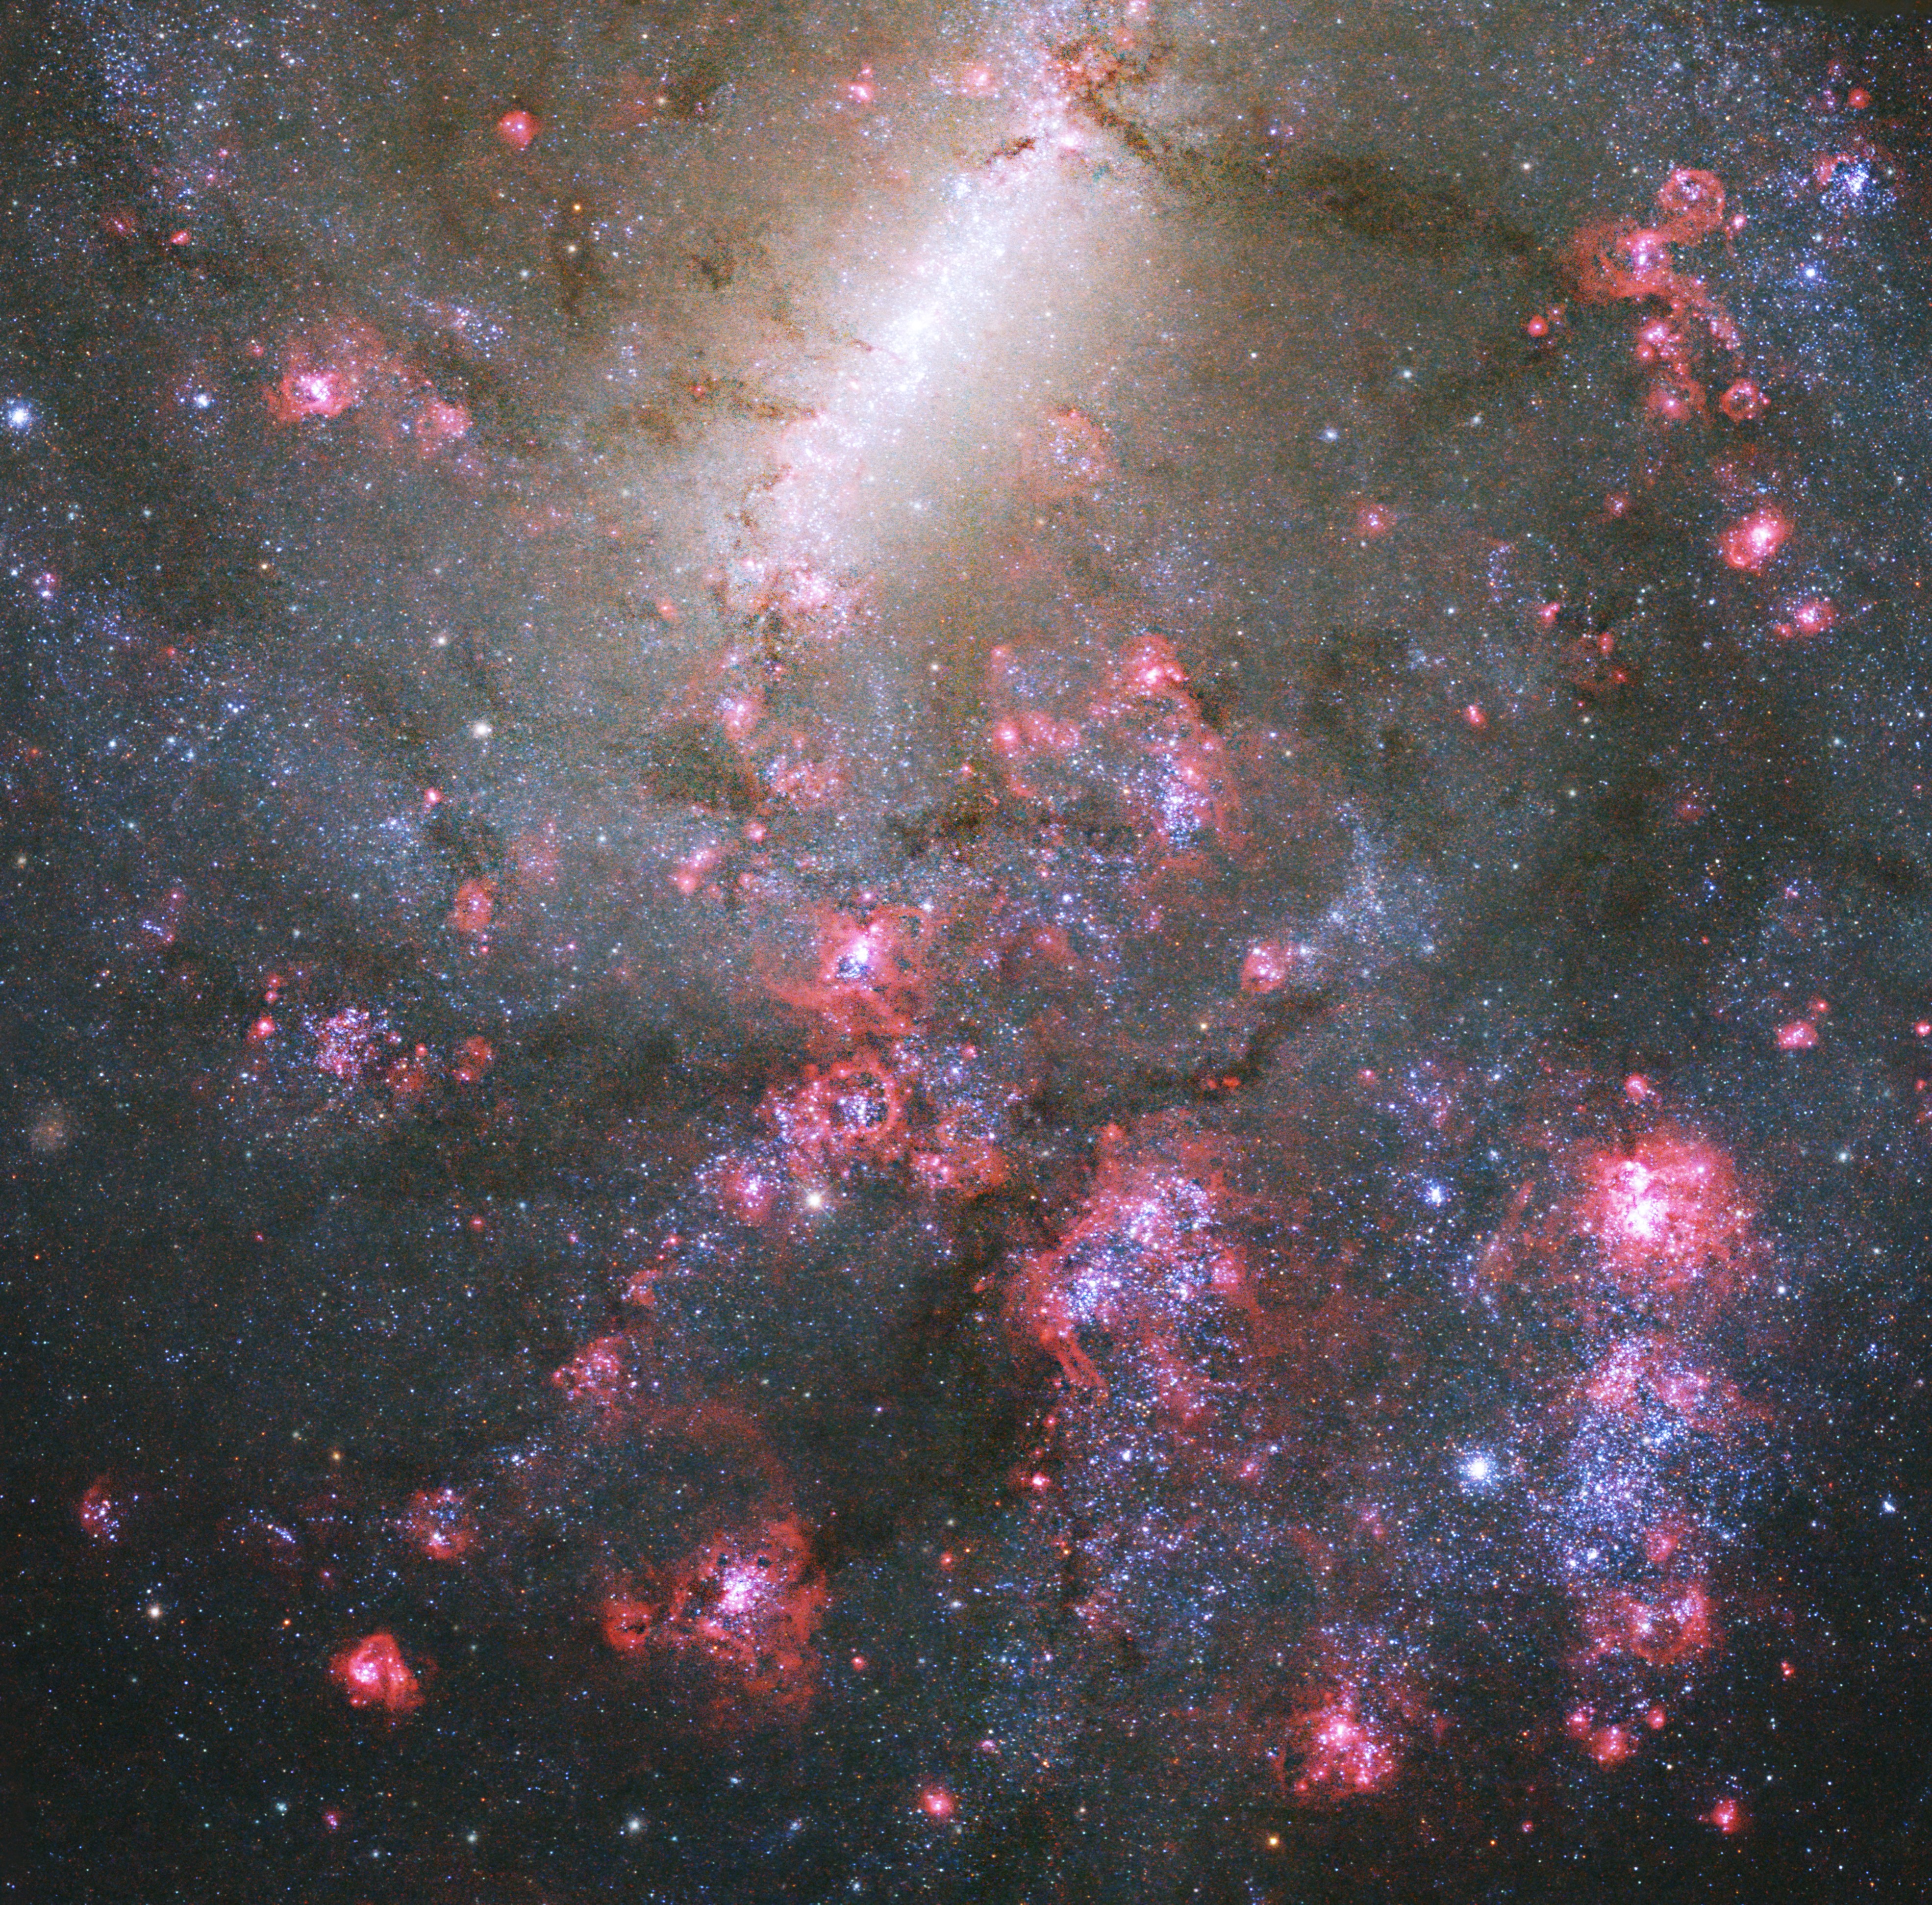 HD 233604 b - NASA Science